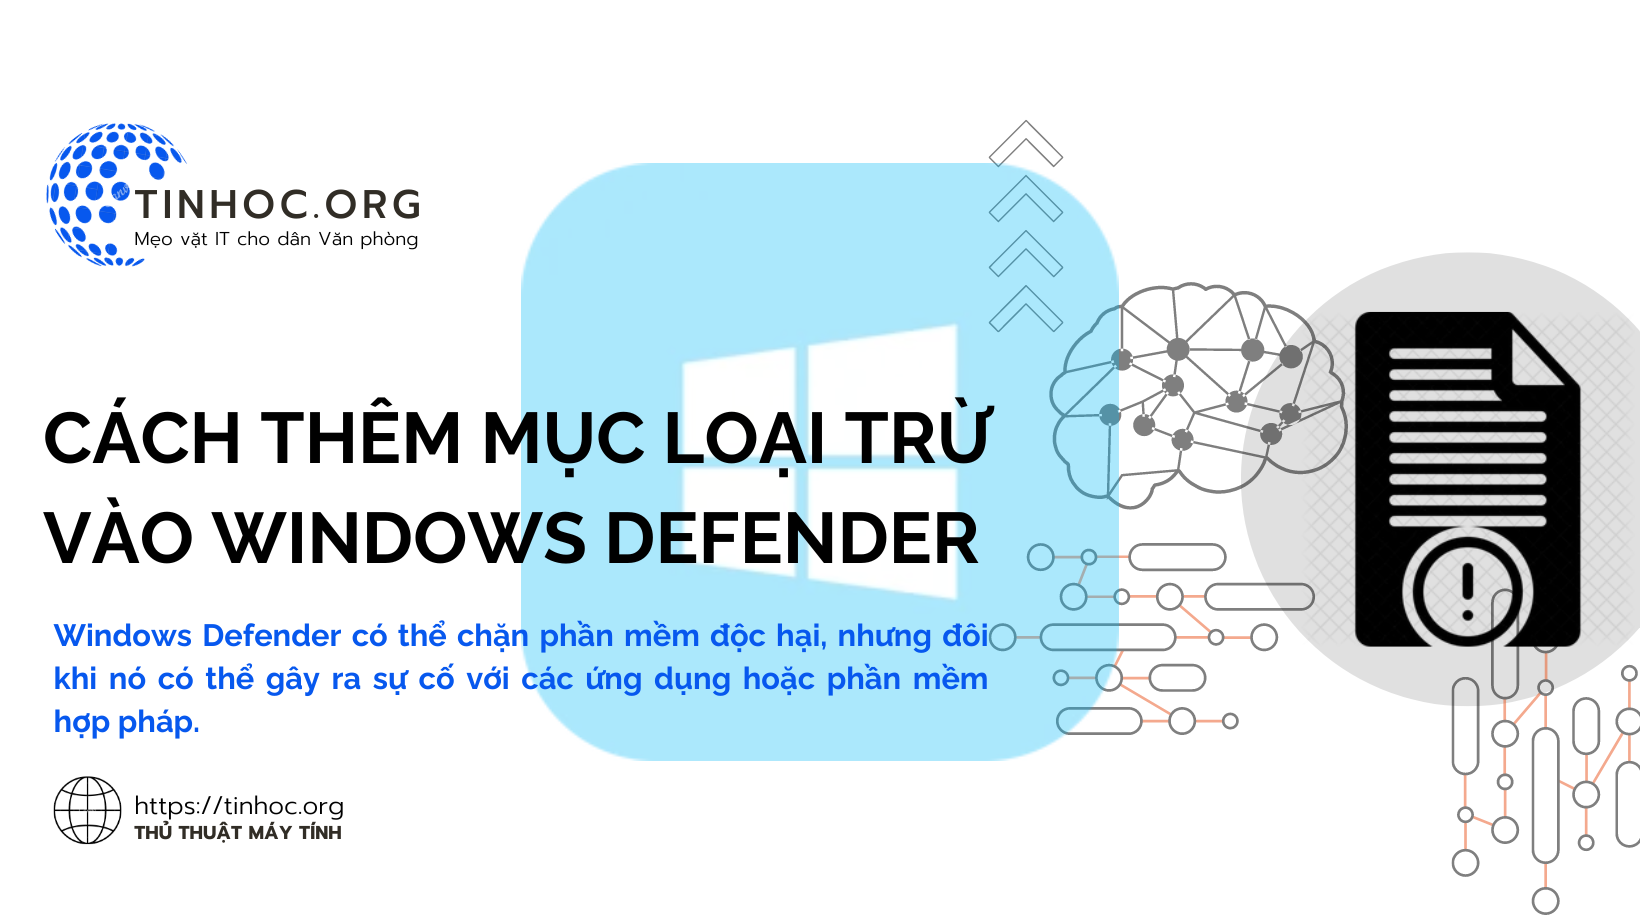 Windows Defender có thể chặn phần mềm độc hại, nhưng đôi khi nó có thể gây ra sự cố với các ứng dụng hoặc phần mềm hợp pháp.